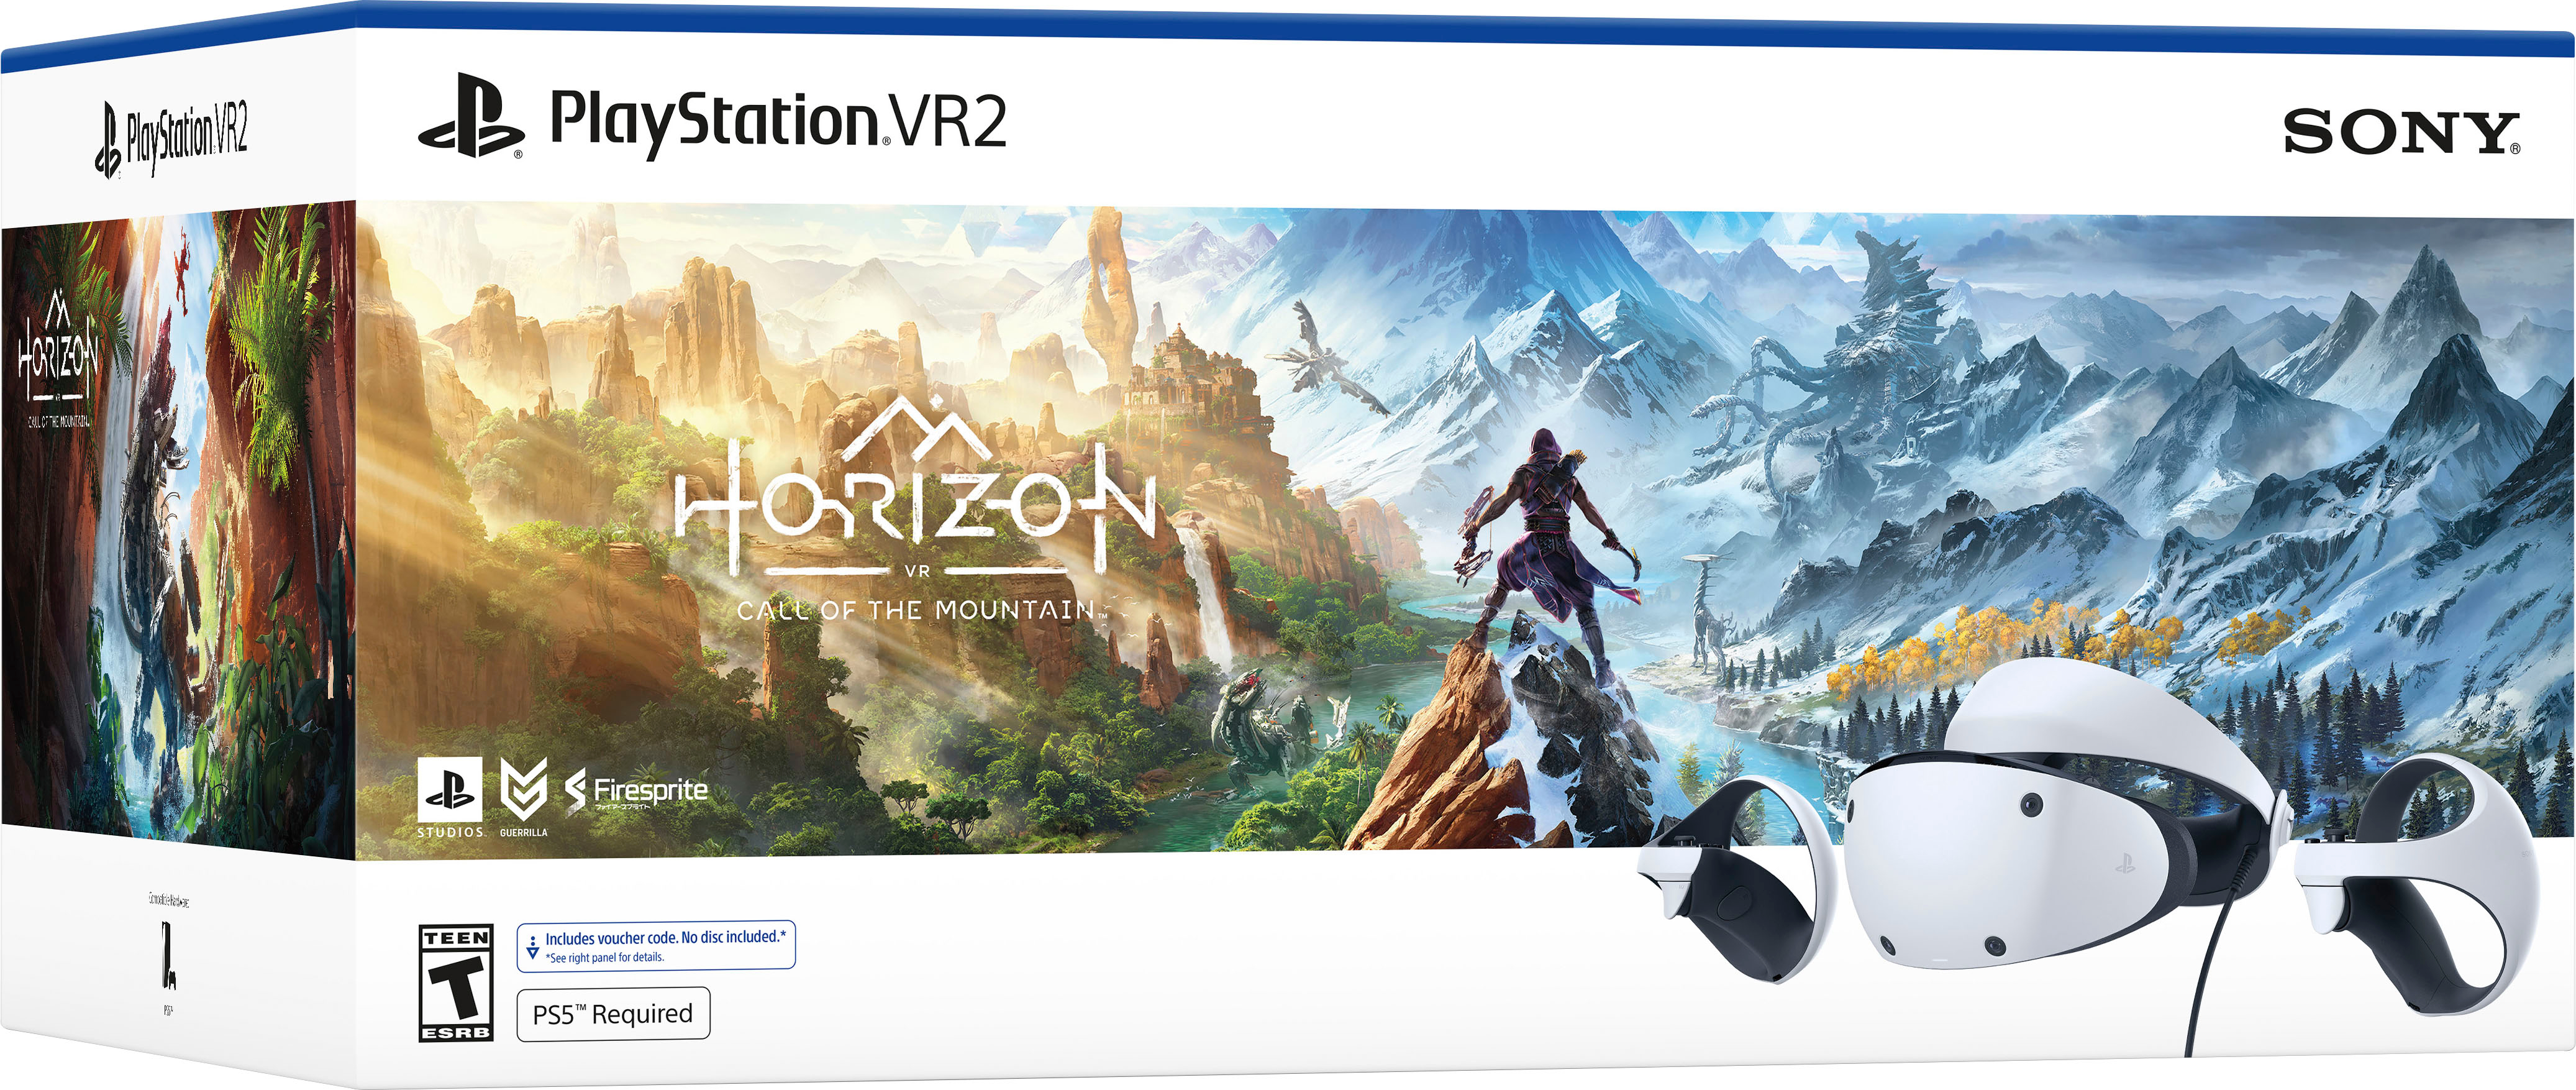 ソニー PS VR2 Horizon Call of the Mountain